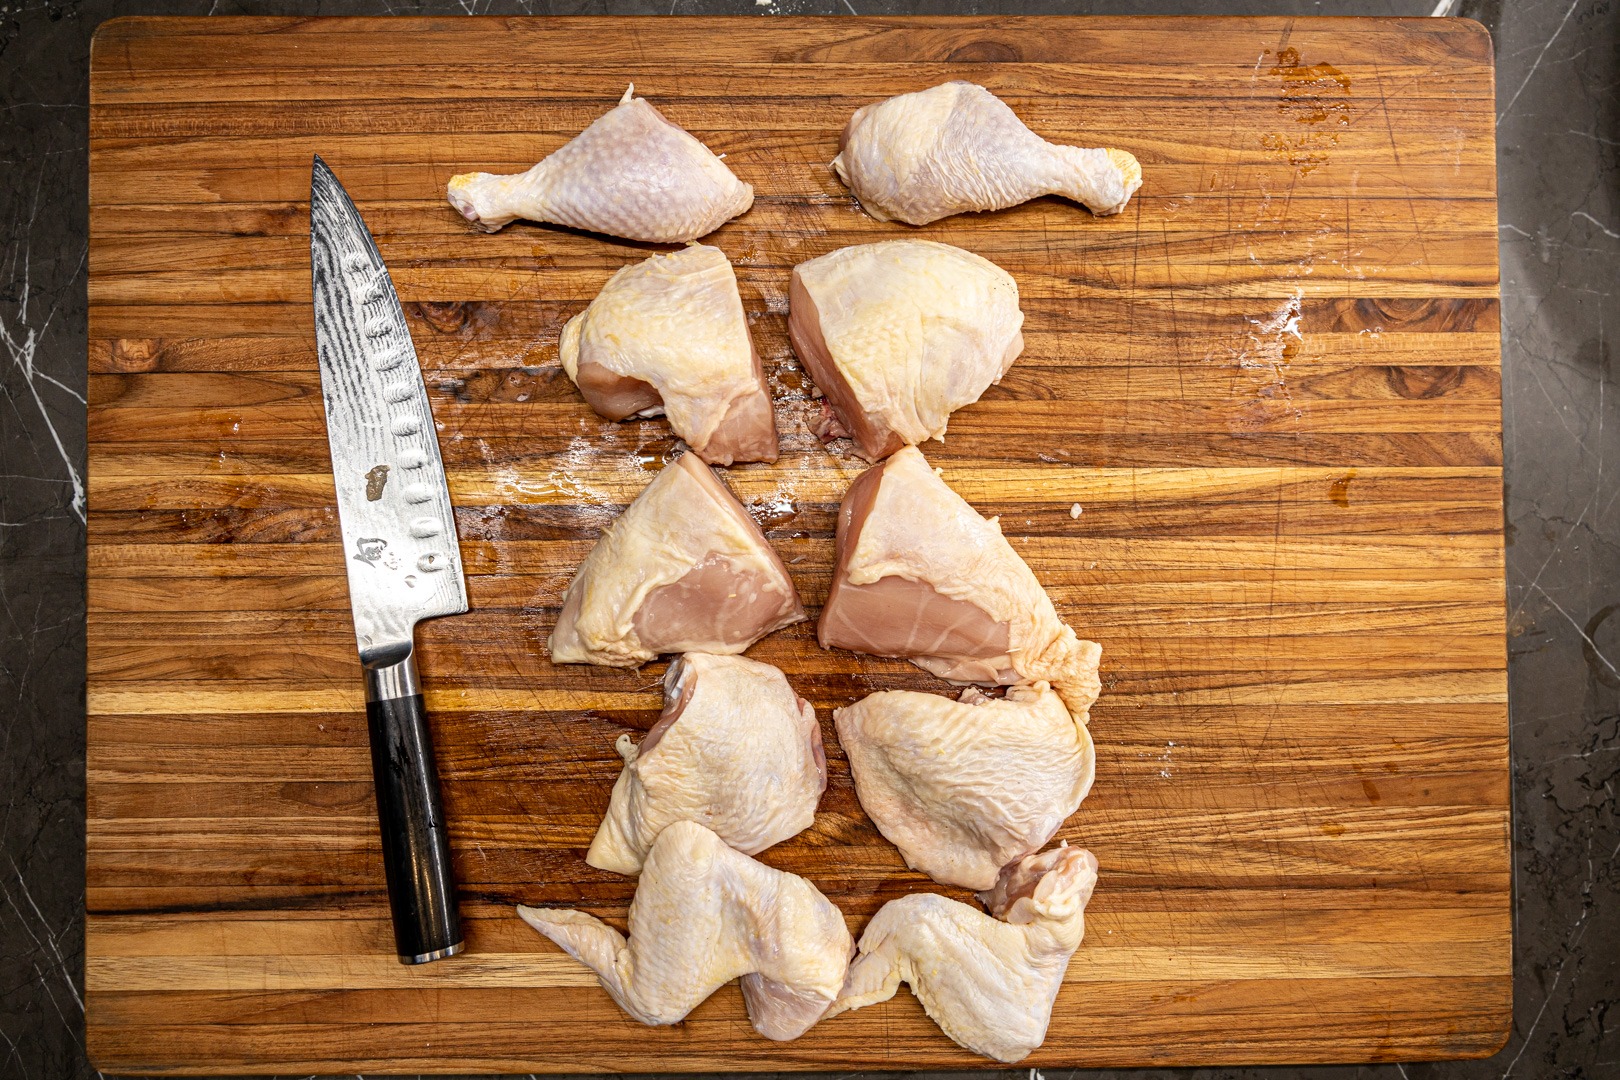 A chicken cut into 10 pieces